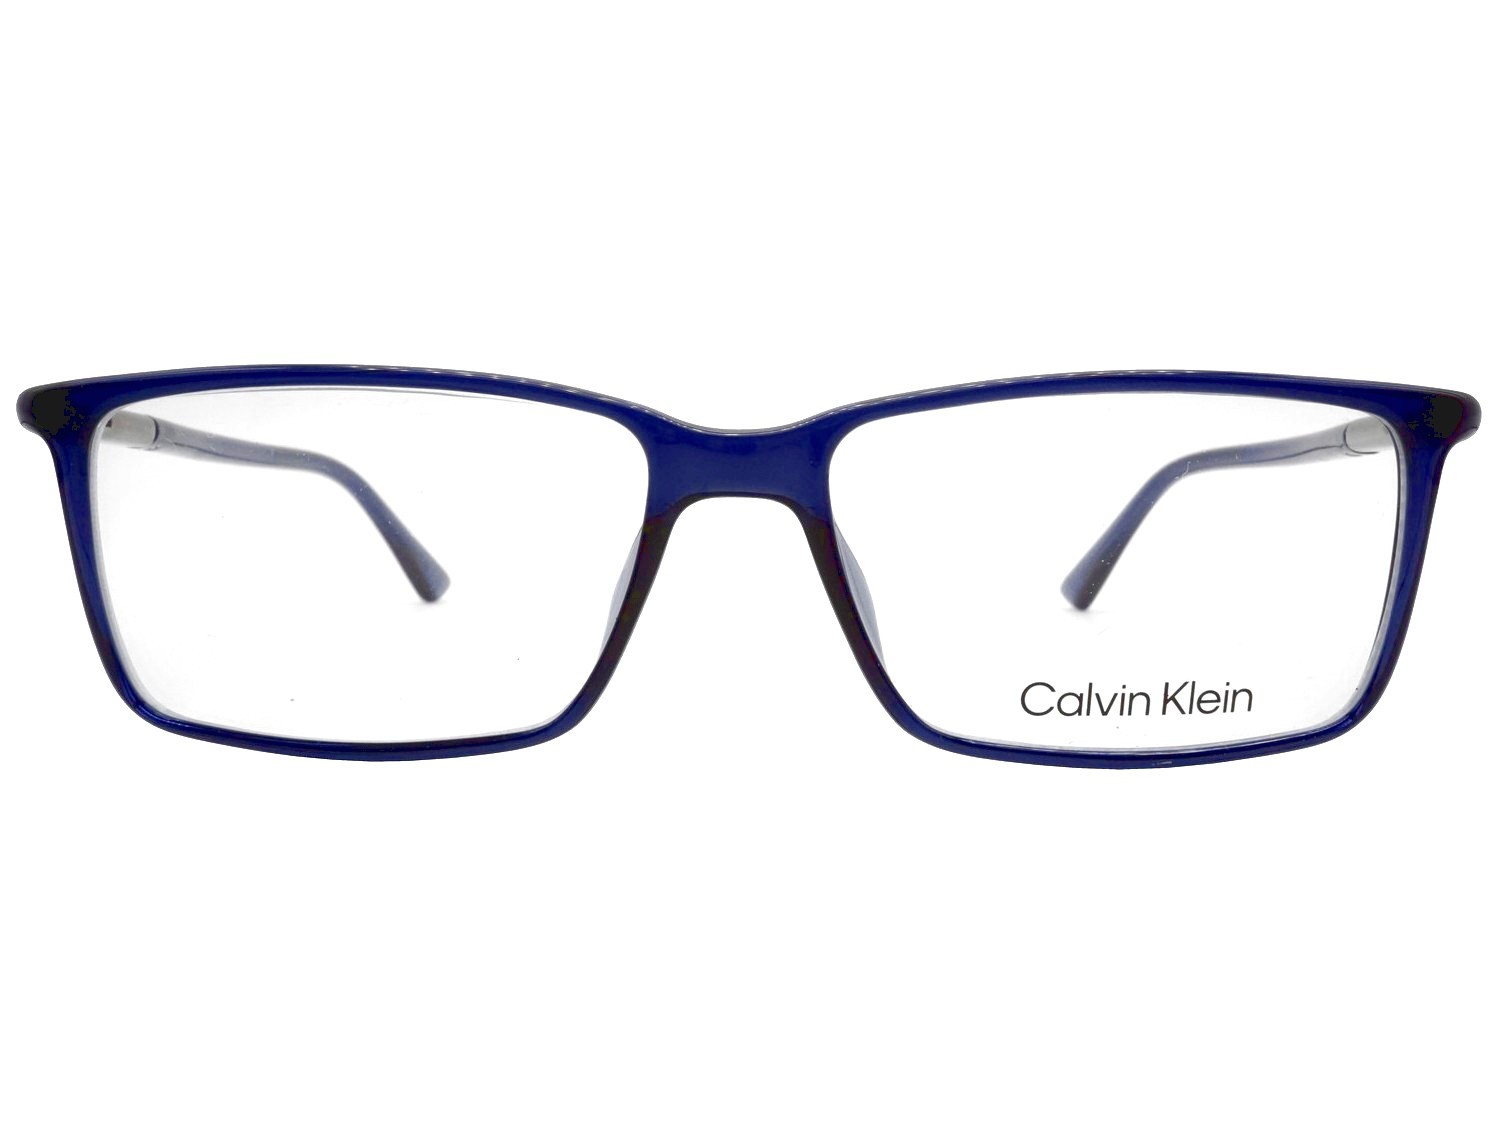 Calvin Klein 21523 004